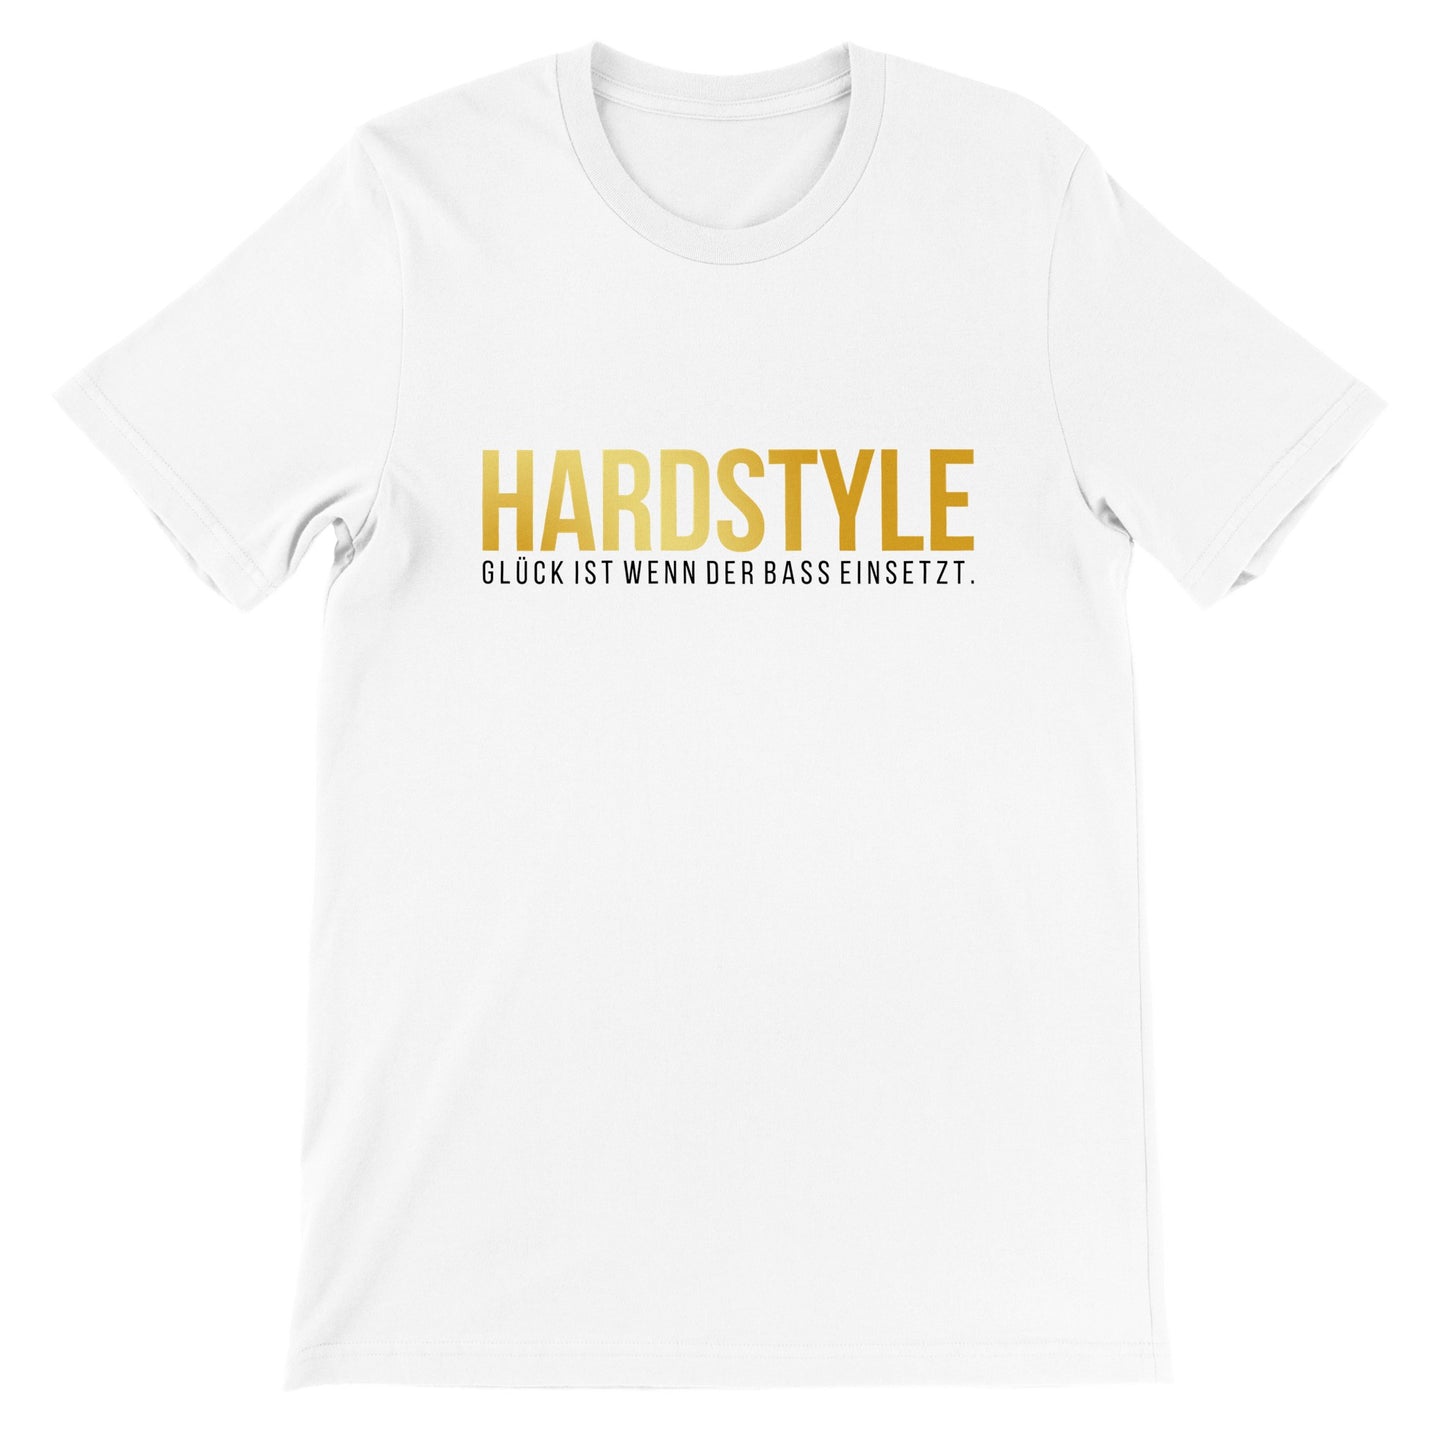 Hardstyle, Glück ist wenn der Bass einsetzt - Premium Männer / Unisex T-Shirt mit Rundhalsausschnitt